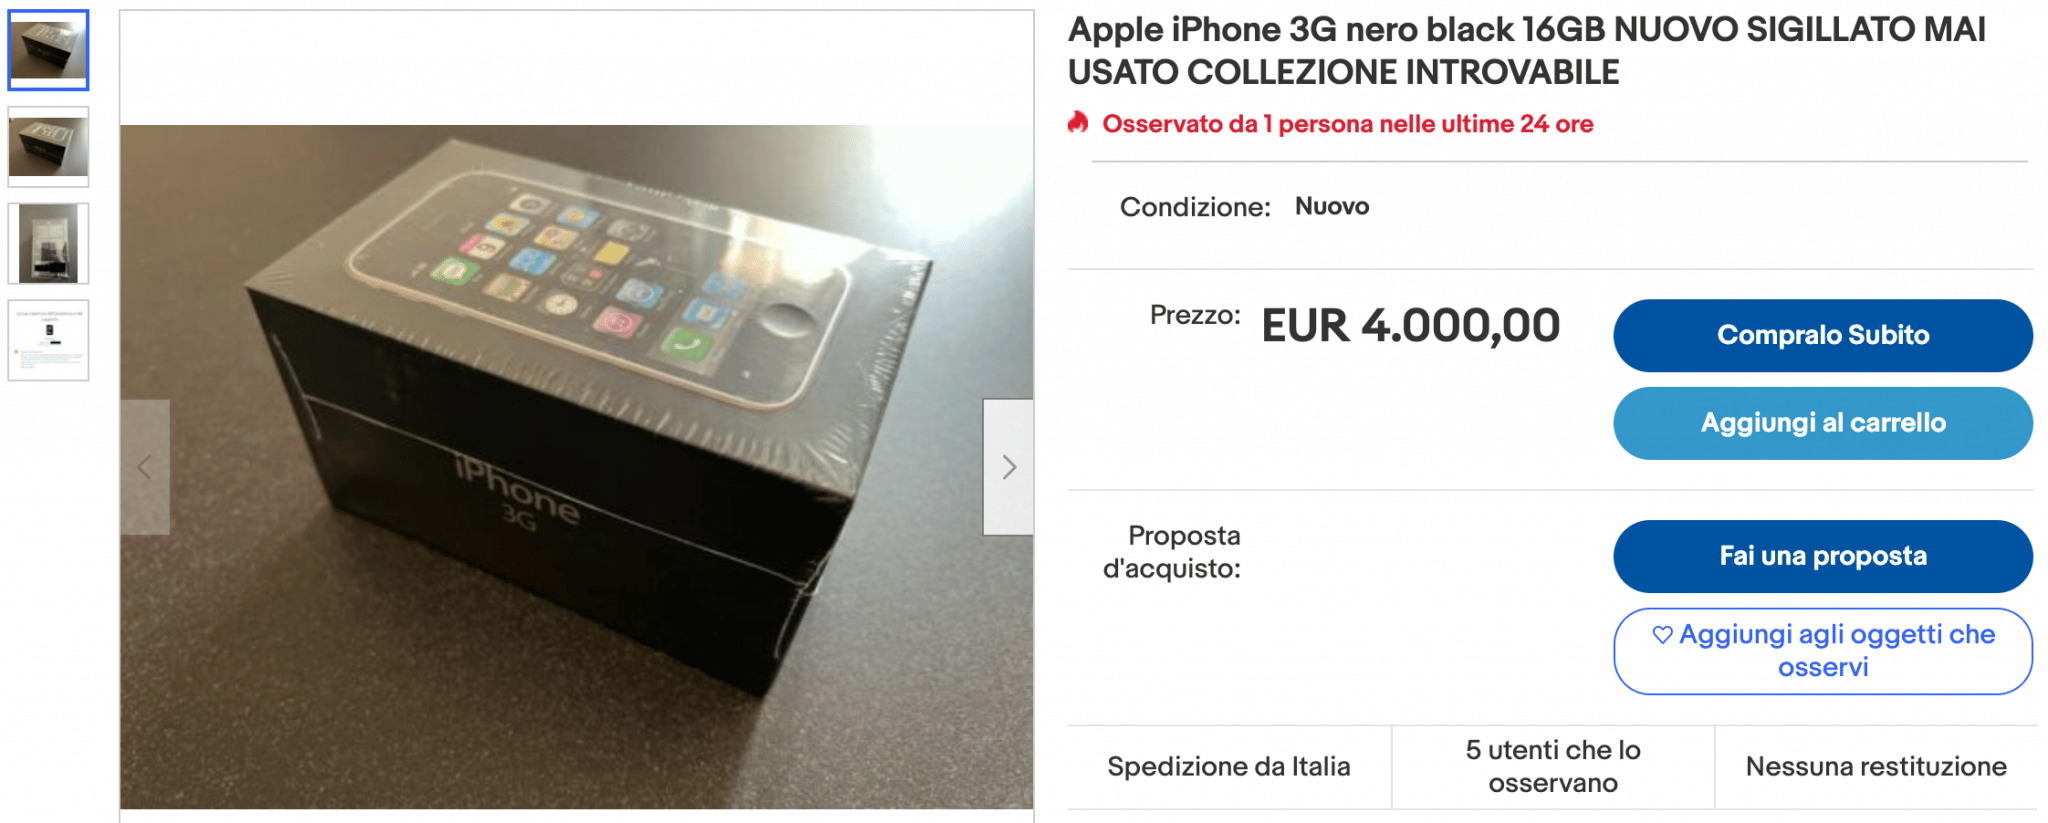 iPhone 3g in vendita a 4000€, ha aumentato il suo valore di 10 volte